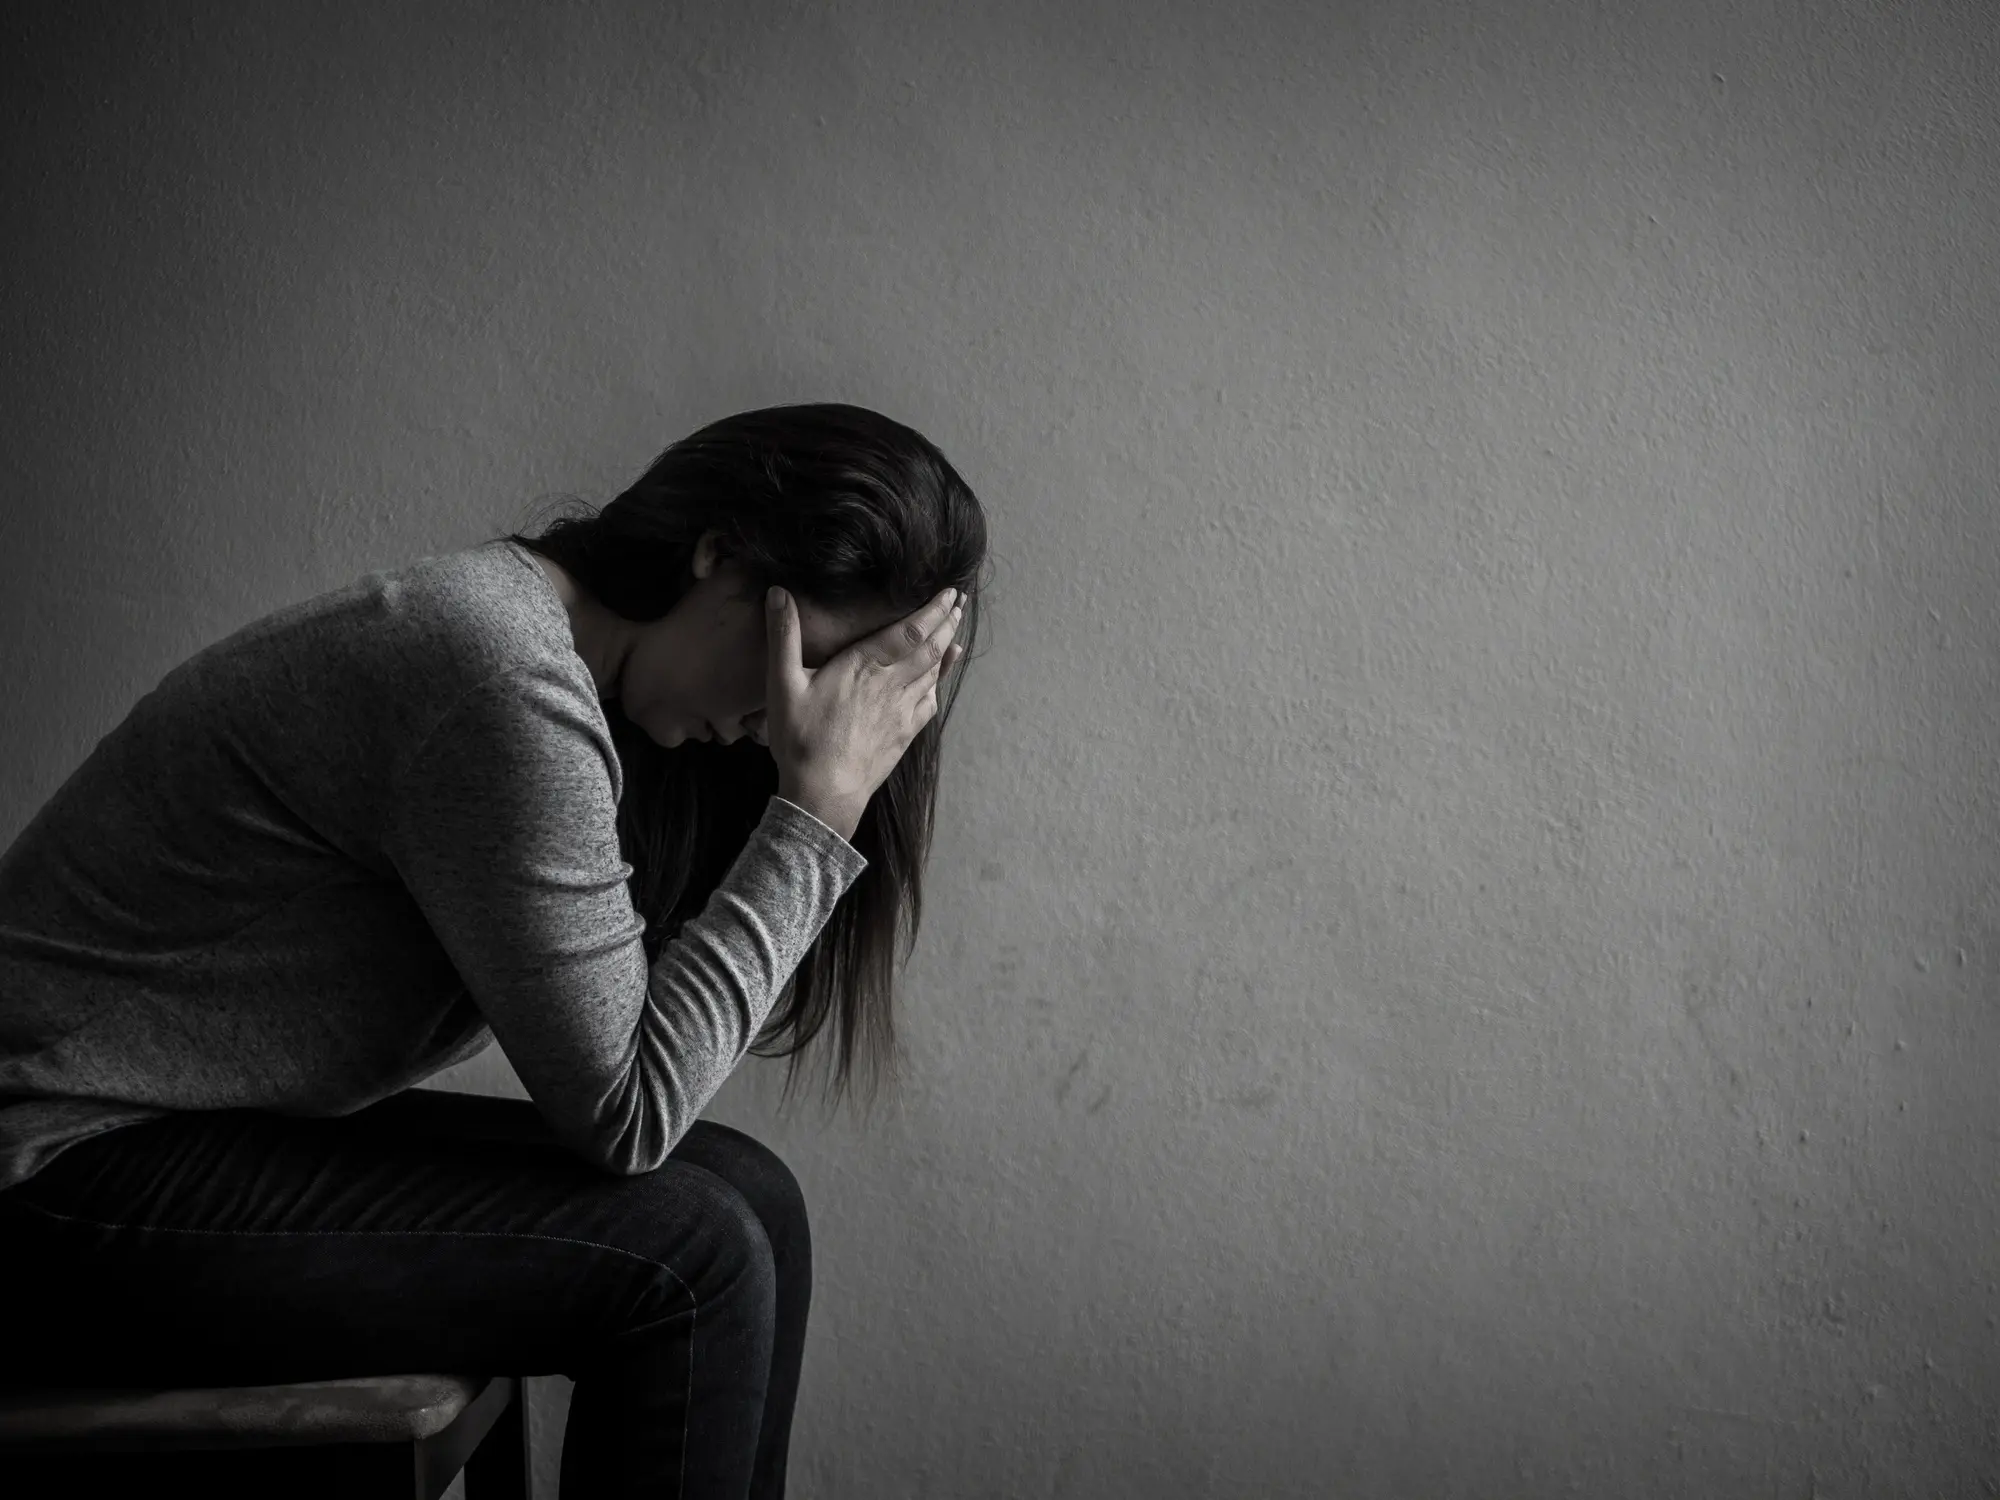 Una chica con problemas de salud mental pensando en el suicidio